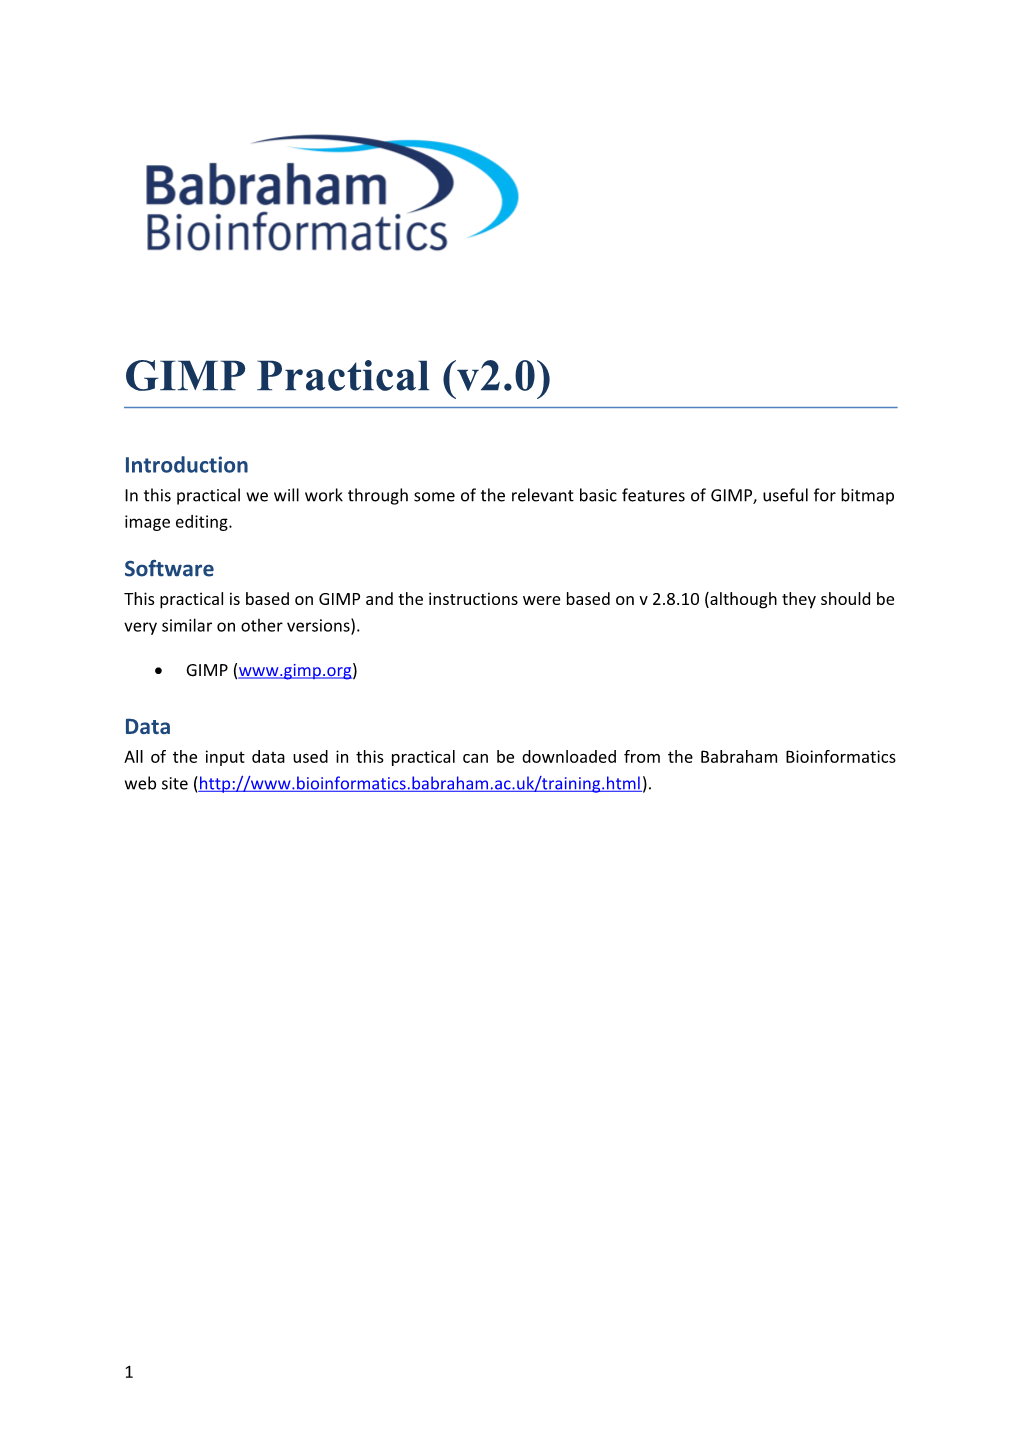 GIMP Practical (V2.0)